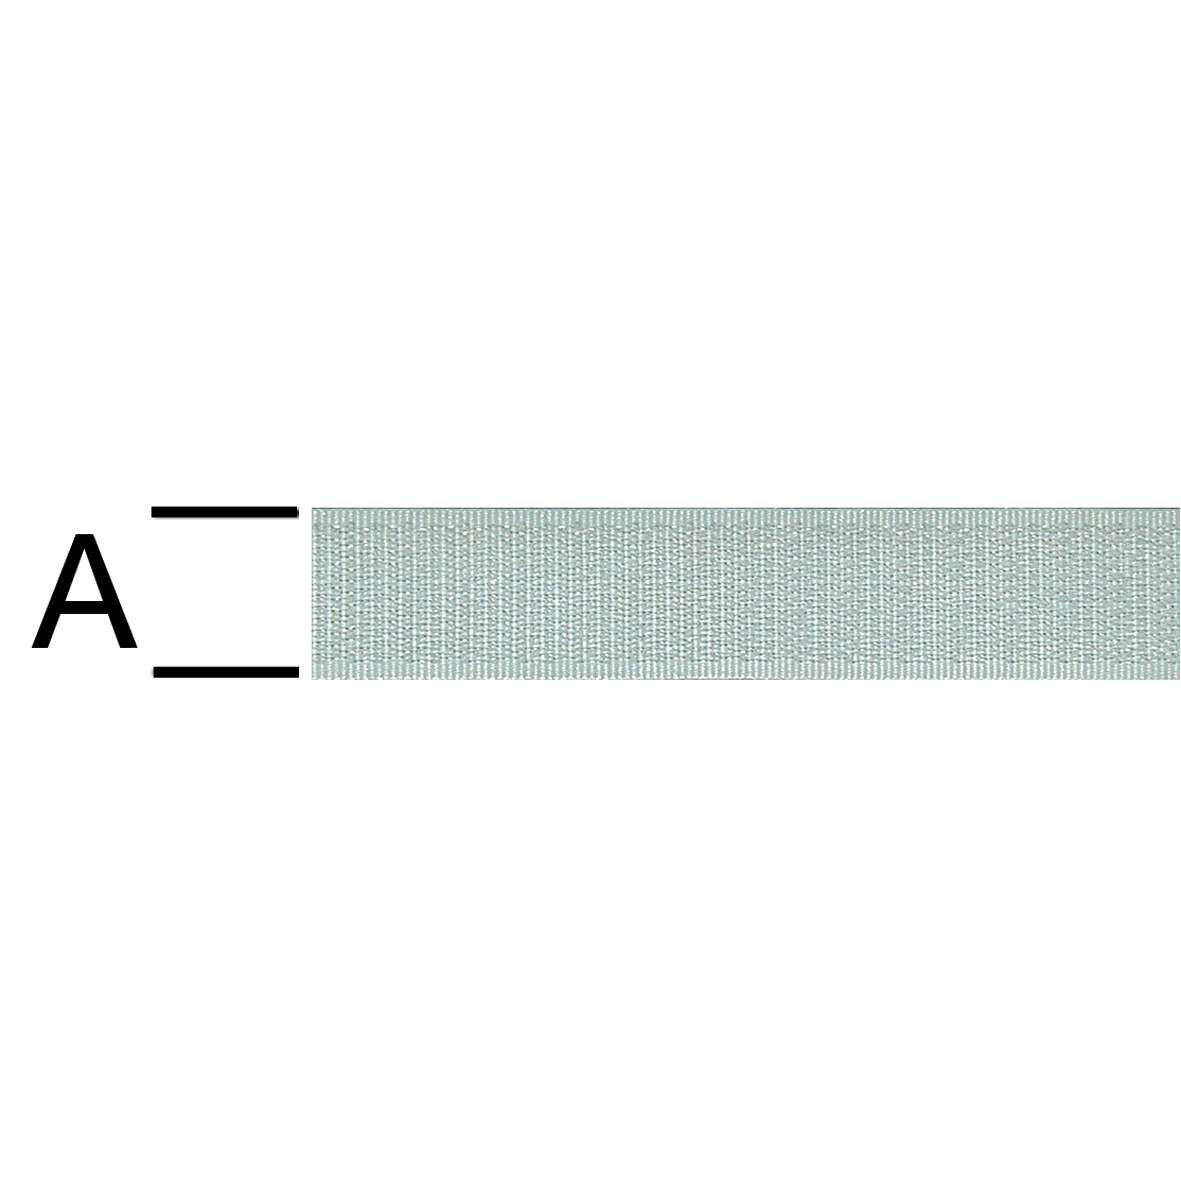 1159774 - Klettband weiß 20mm Haken selbstklebend,40lfm.